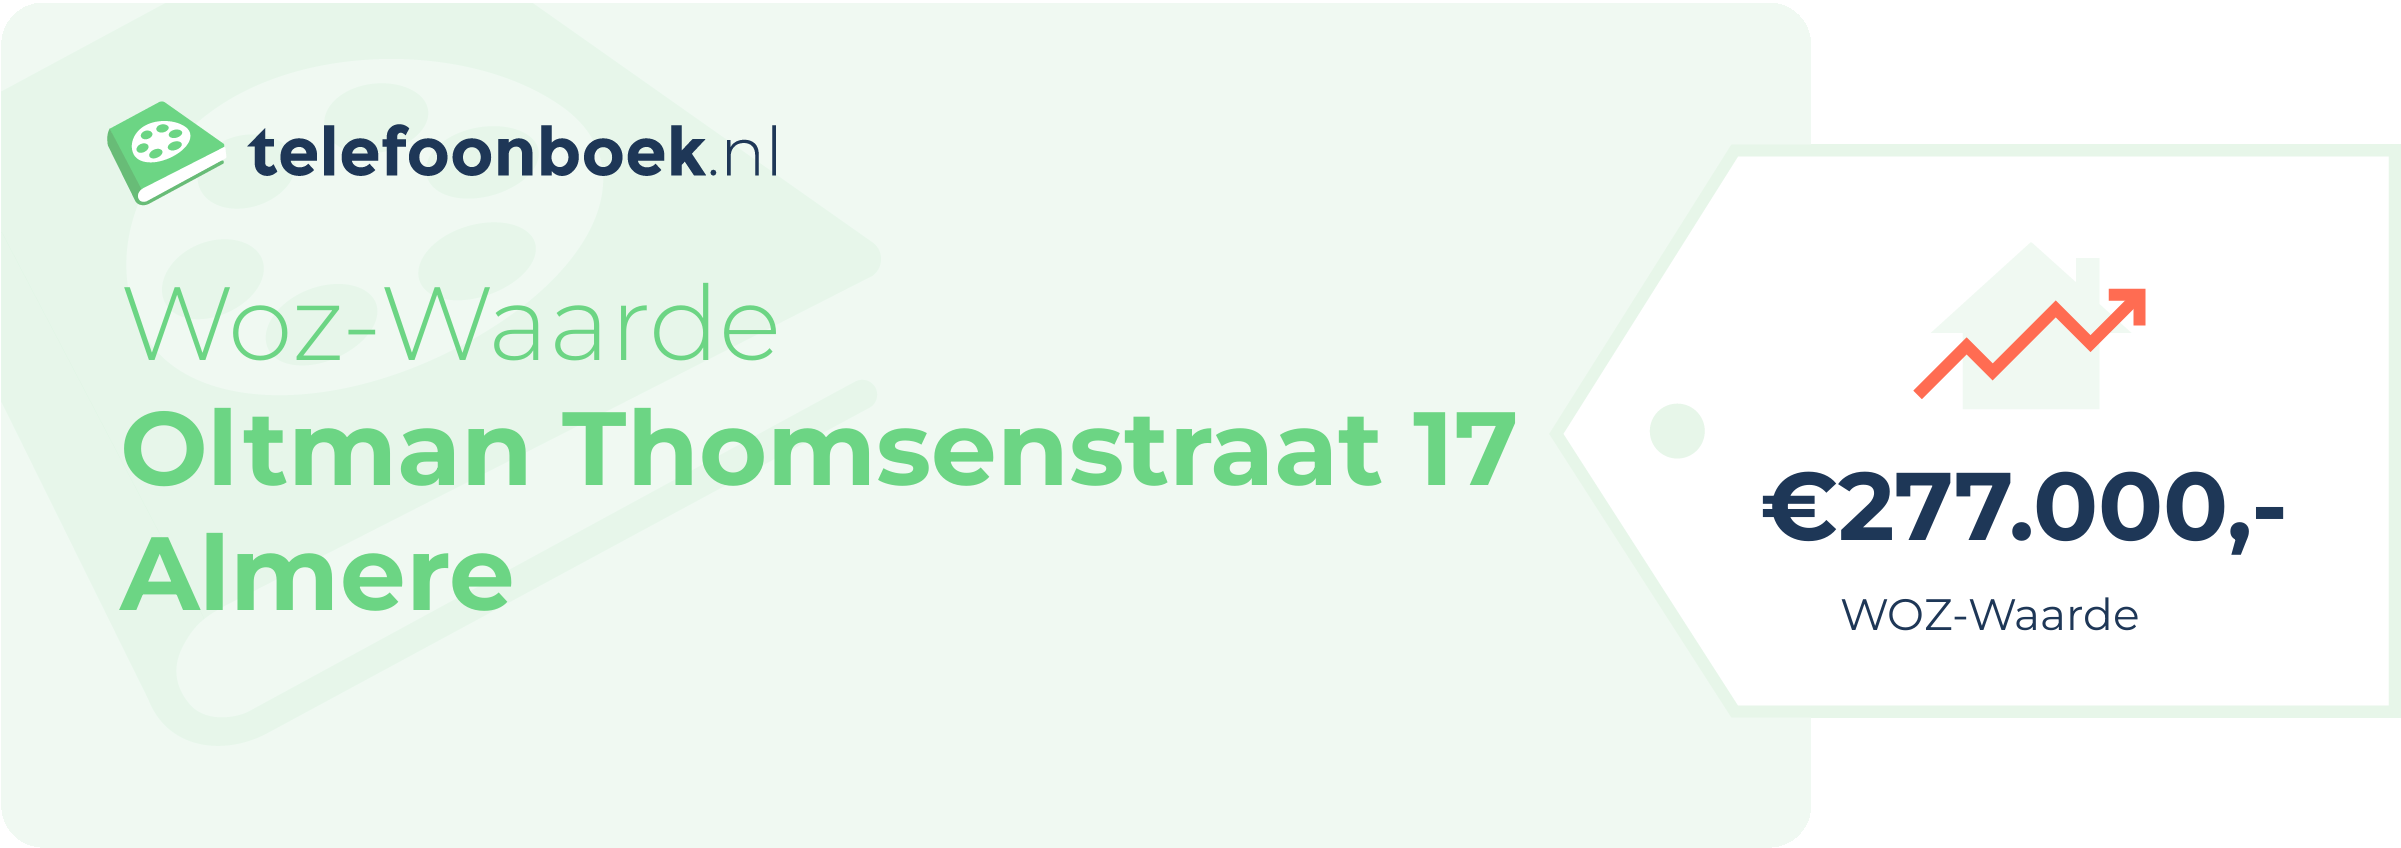 WOZ-waarde Oltman Thomsenstraat 17 Almere